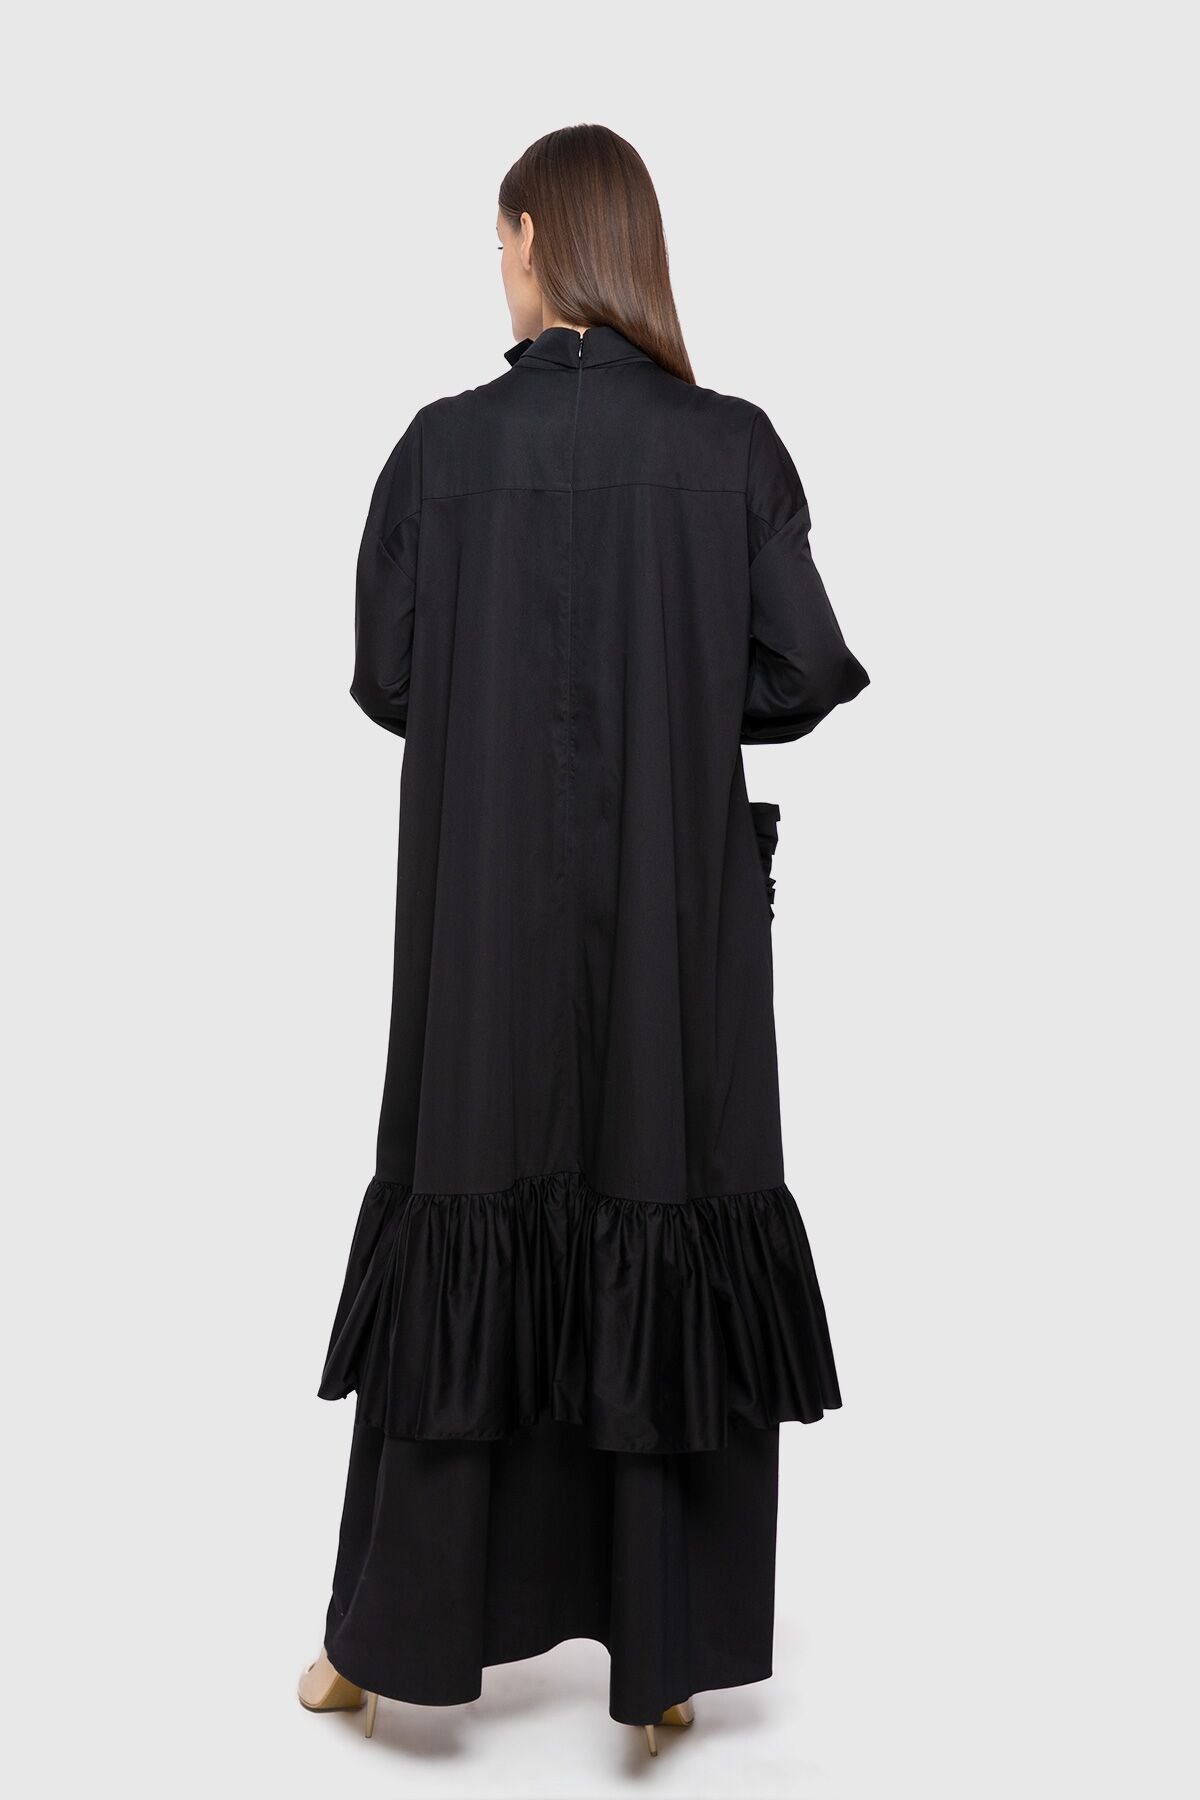 İşleme Detaylı Etek Kısmı Kat Kat Uzun Siyah Poplin Elbise